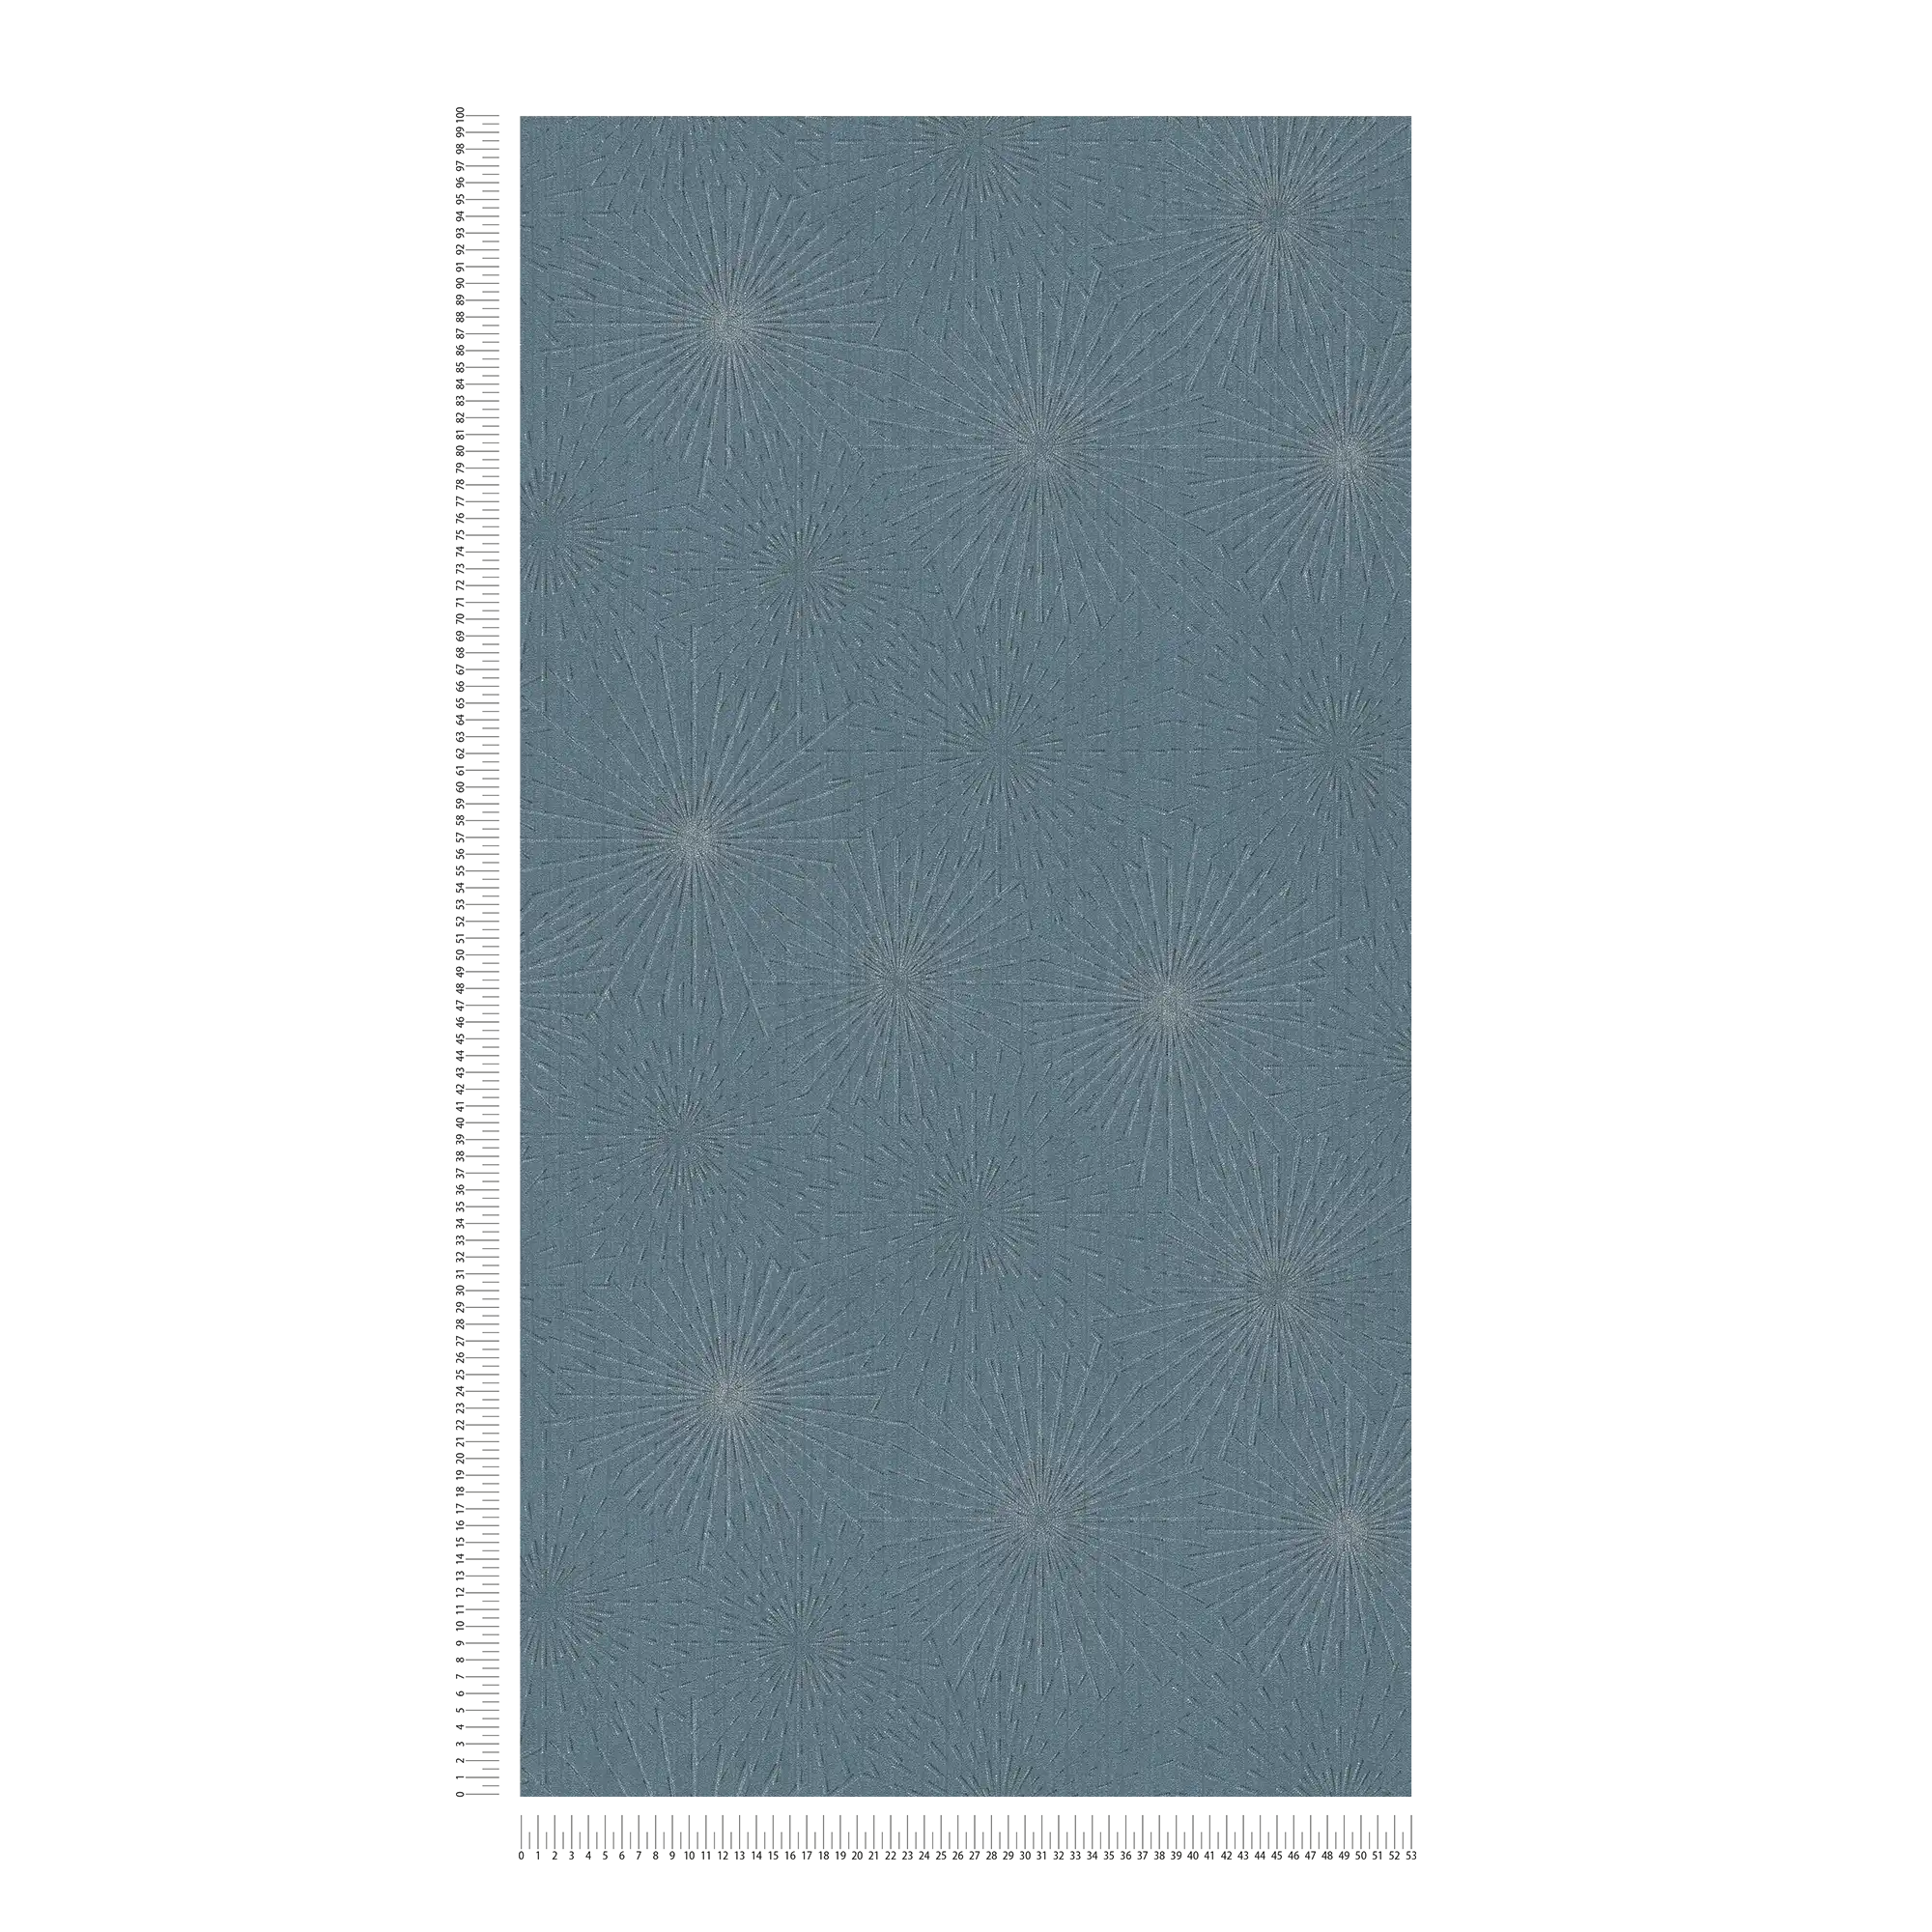             behang retro design starburst - blauw, metallic
        